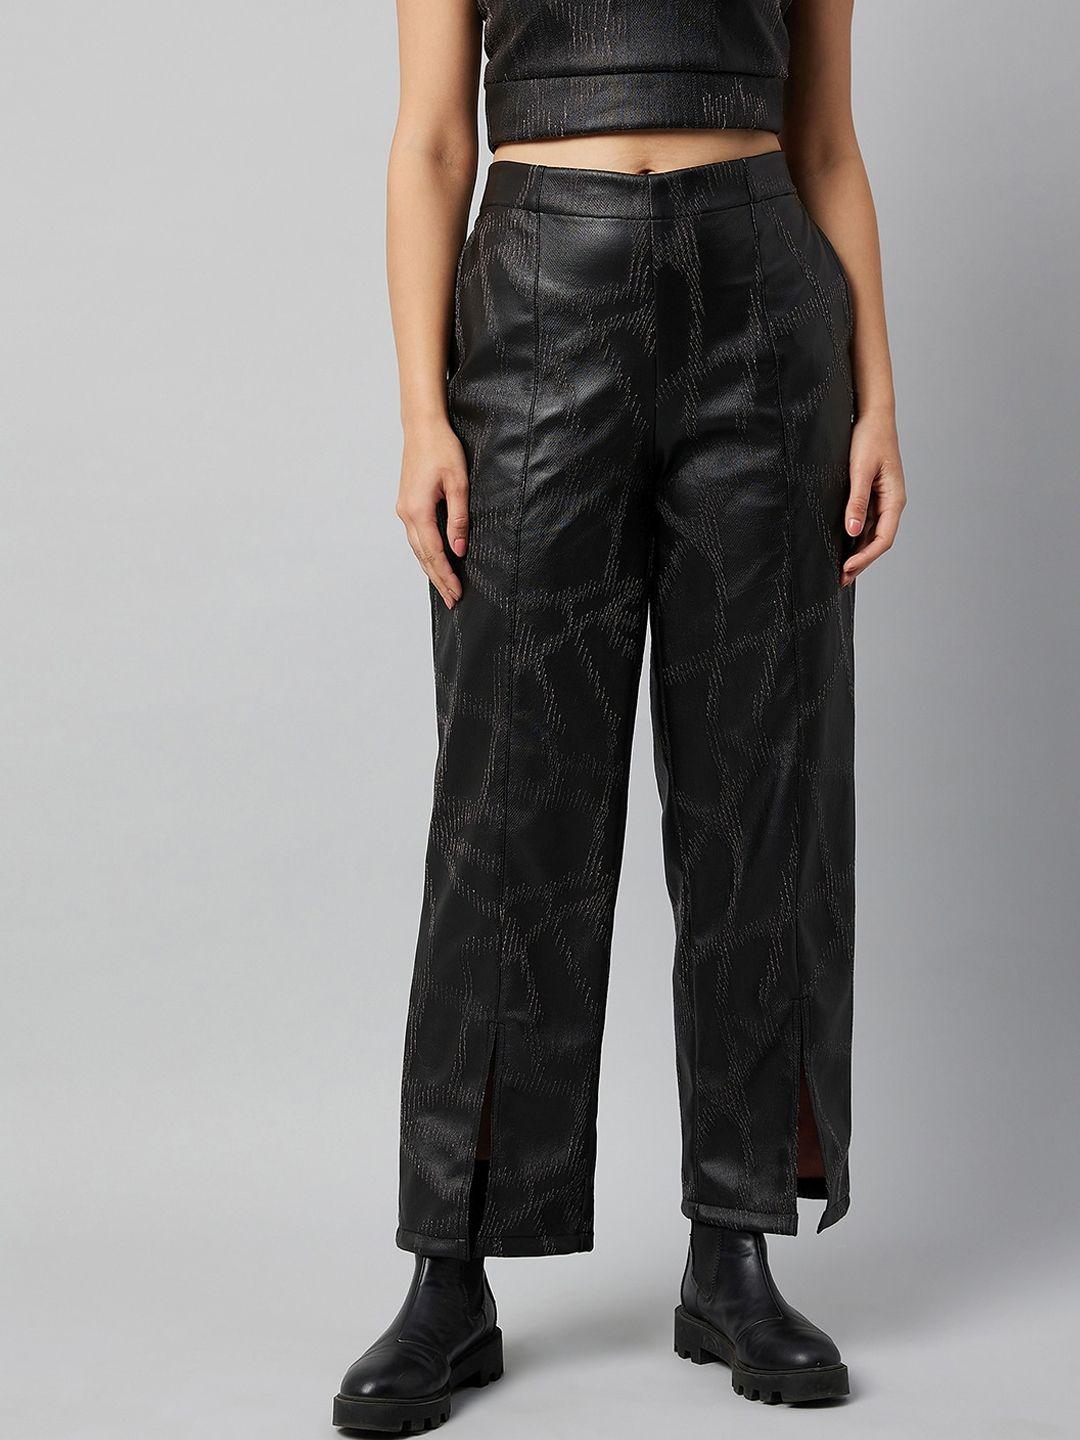 athena women black textured smart leather non iron trousers